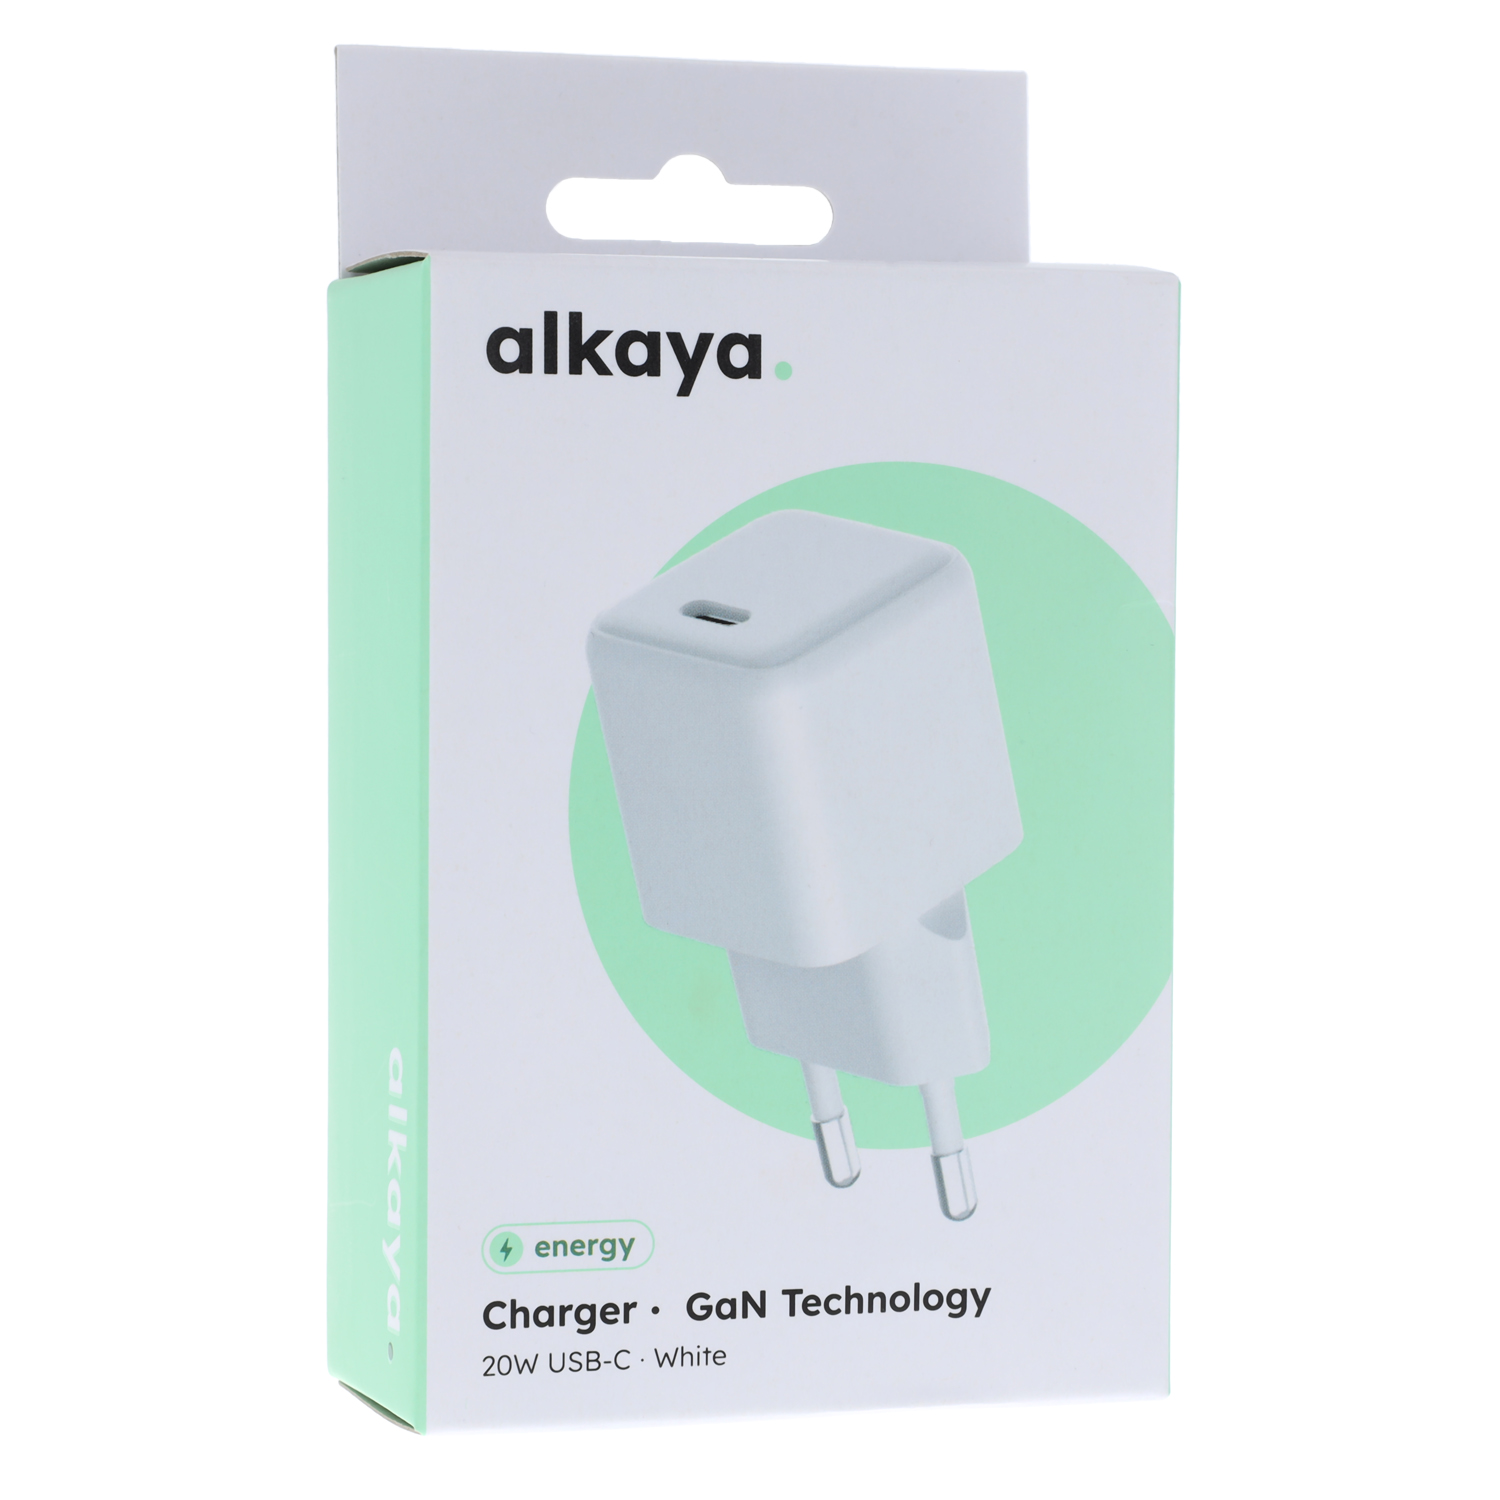 alkaya. | NEXUS chargers with GaN technology 20W USB-C Universal Kompatibilität, Weiß